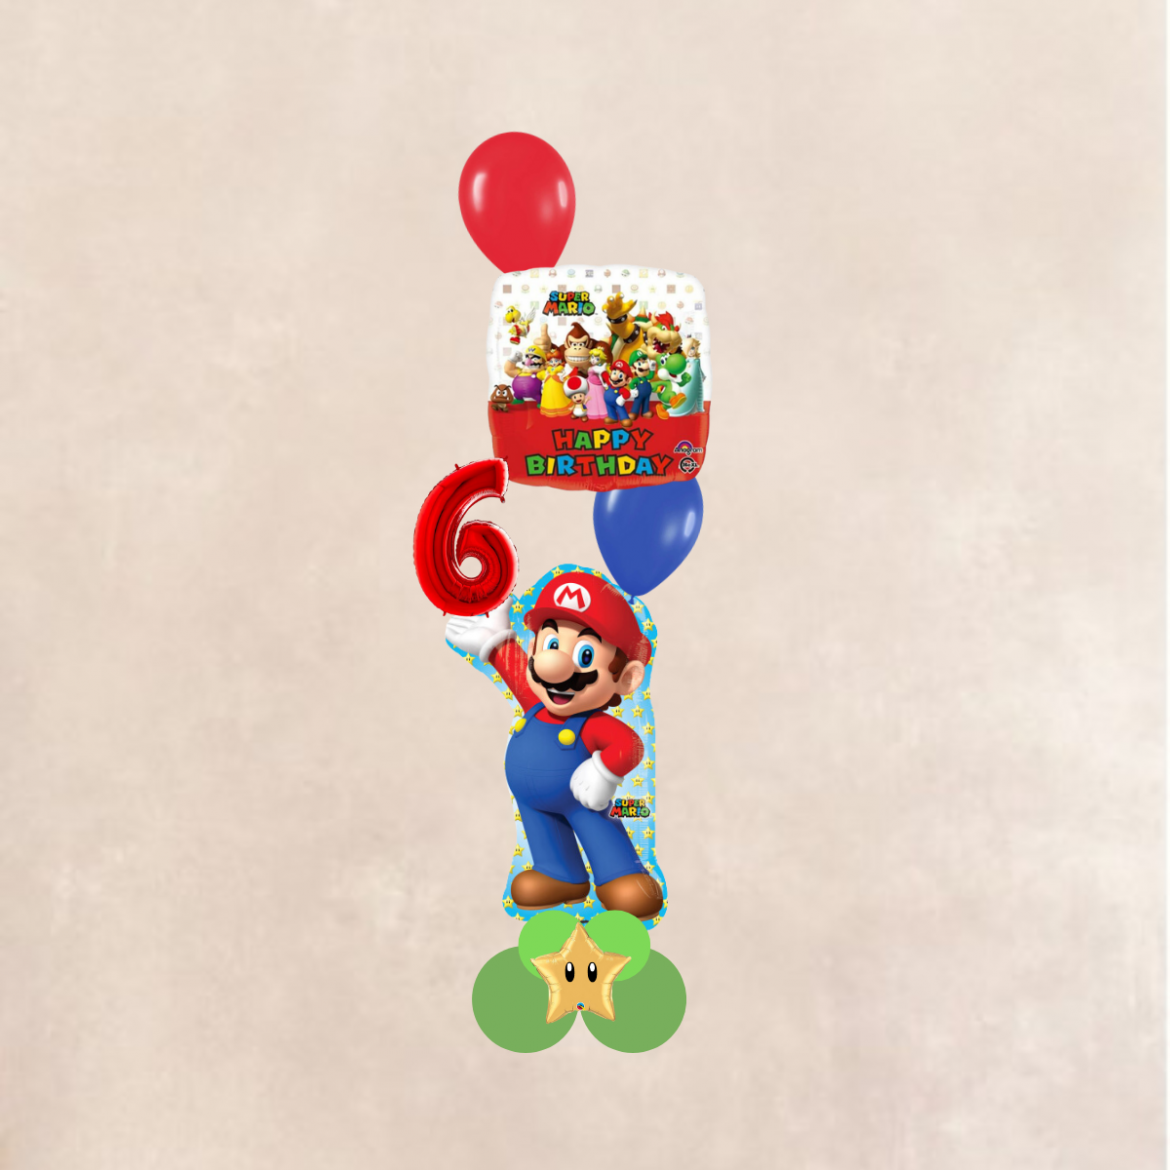 Ballon sur le thème de Super Mario